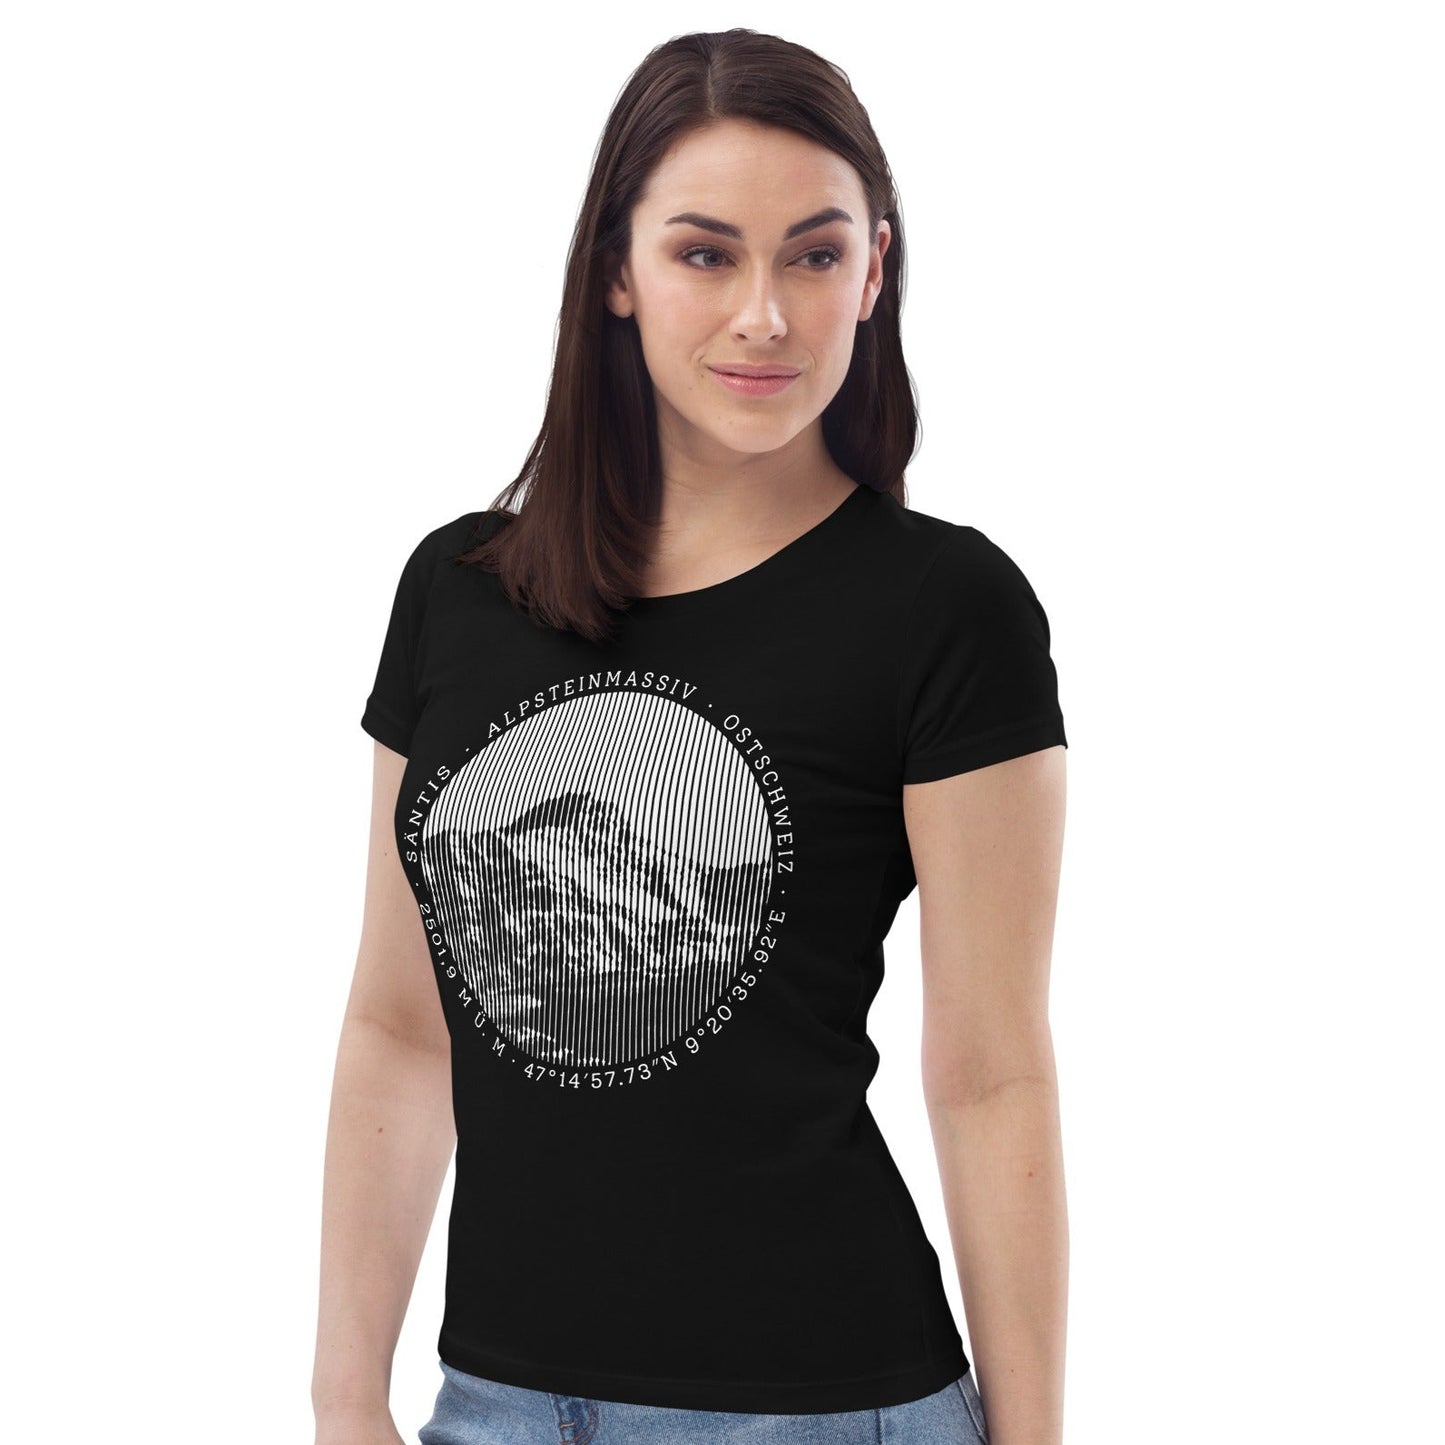 Diese Bergfreundin trägt ein körperbetontes, schwarzes T-Shirt aus der Säntis-Collection von Vallada. Der taillierte Schnit betont ihre Figur. Der Aufdruck mit dem Säntis-Gipfel auf ihrem T-Shirt weisst sie als grosse Liebhaberin der Bergwelt des Alpsteins aus.  